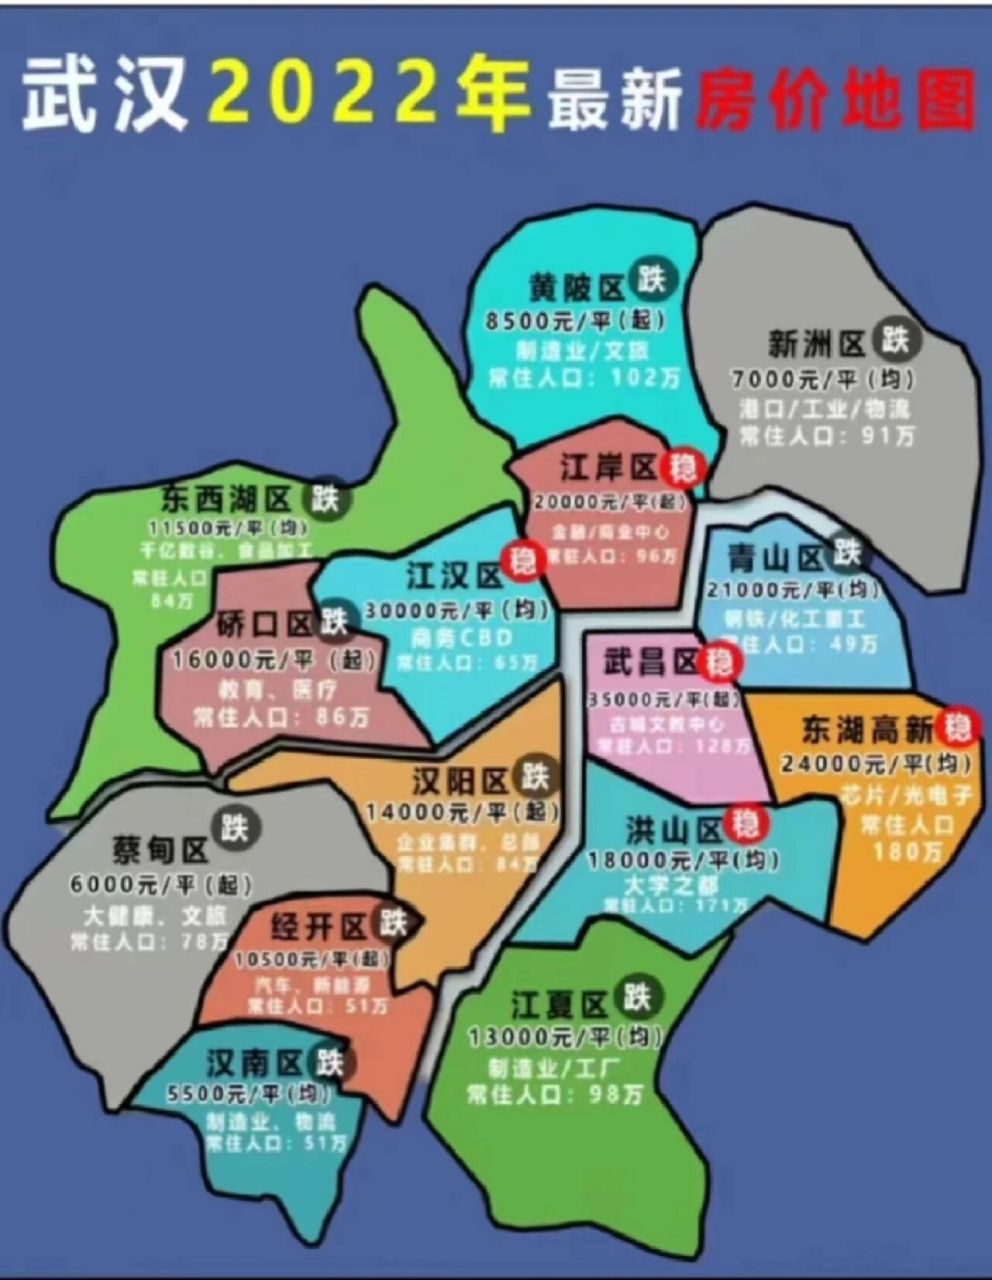 武汉各区最新房价 武汉市有汉口,武昌和汉阳三镇组成,俗称大汉口,大